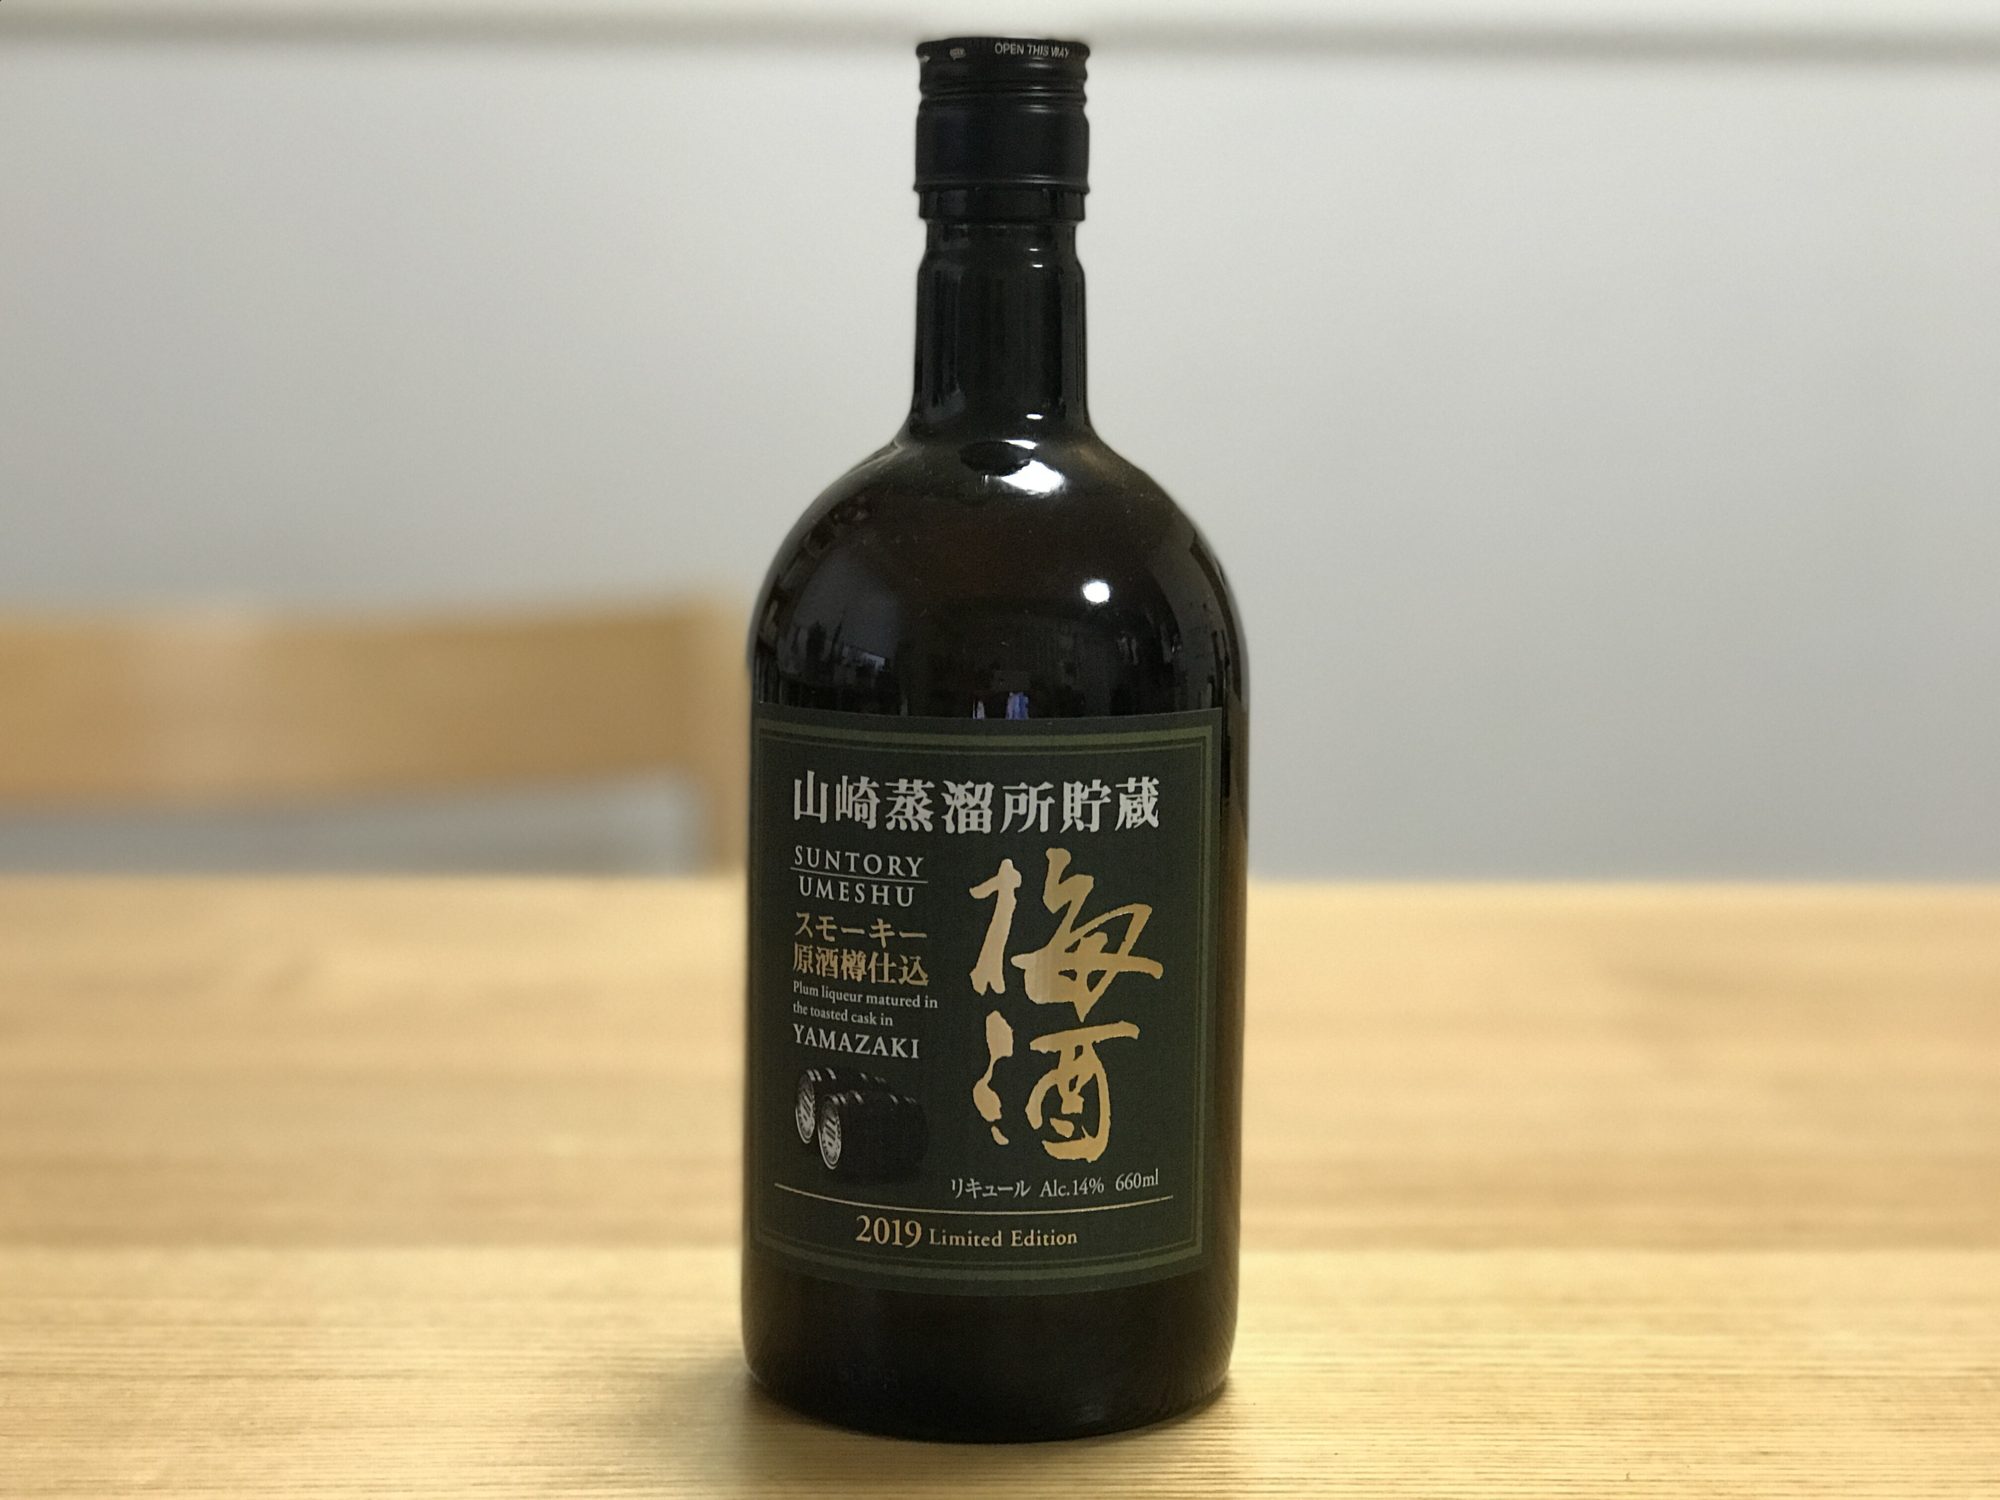 山崎蒸溜所貯蔵 スモーキー原酒樽仕込梅酒 2019 Limited Edition」を 